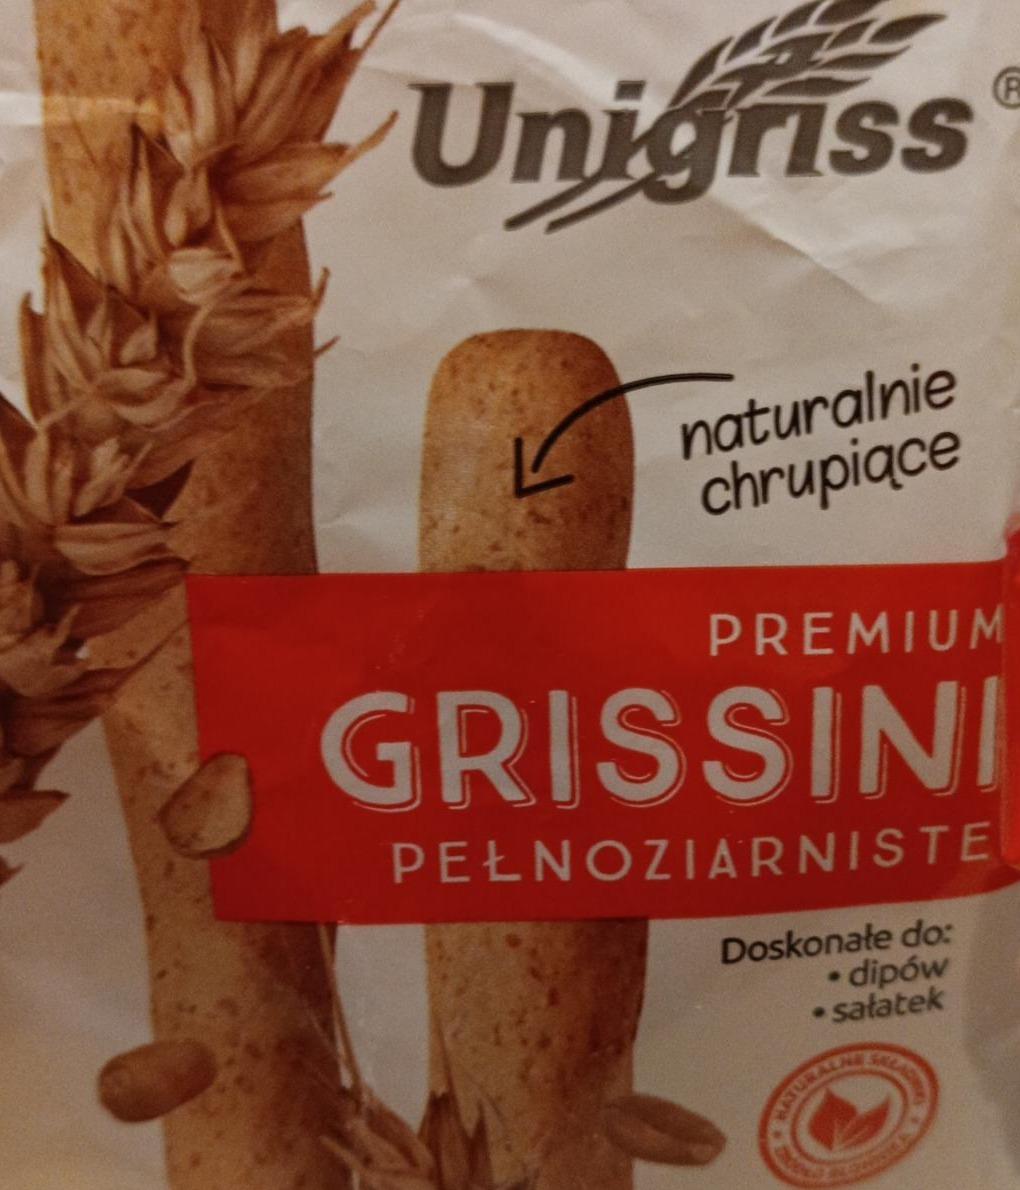 Фото - Premium grissini pełnoziarniste Unigriss